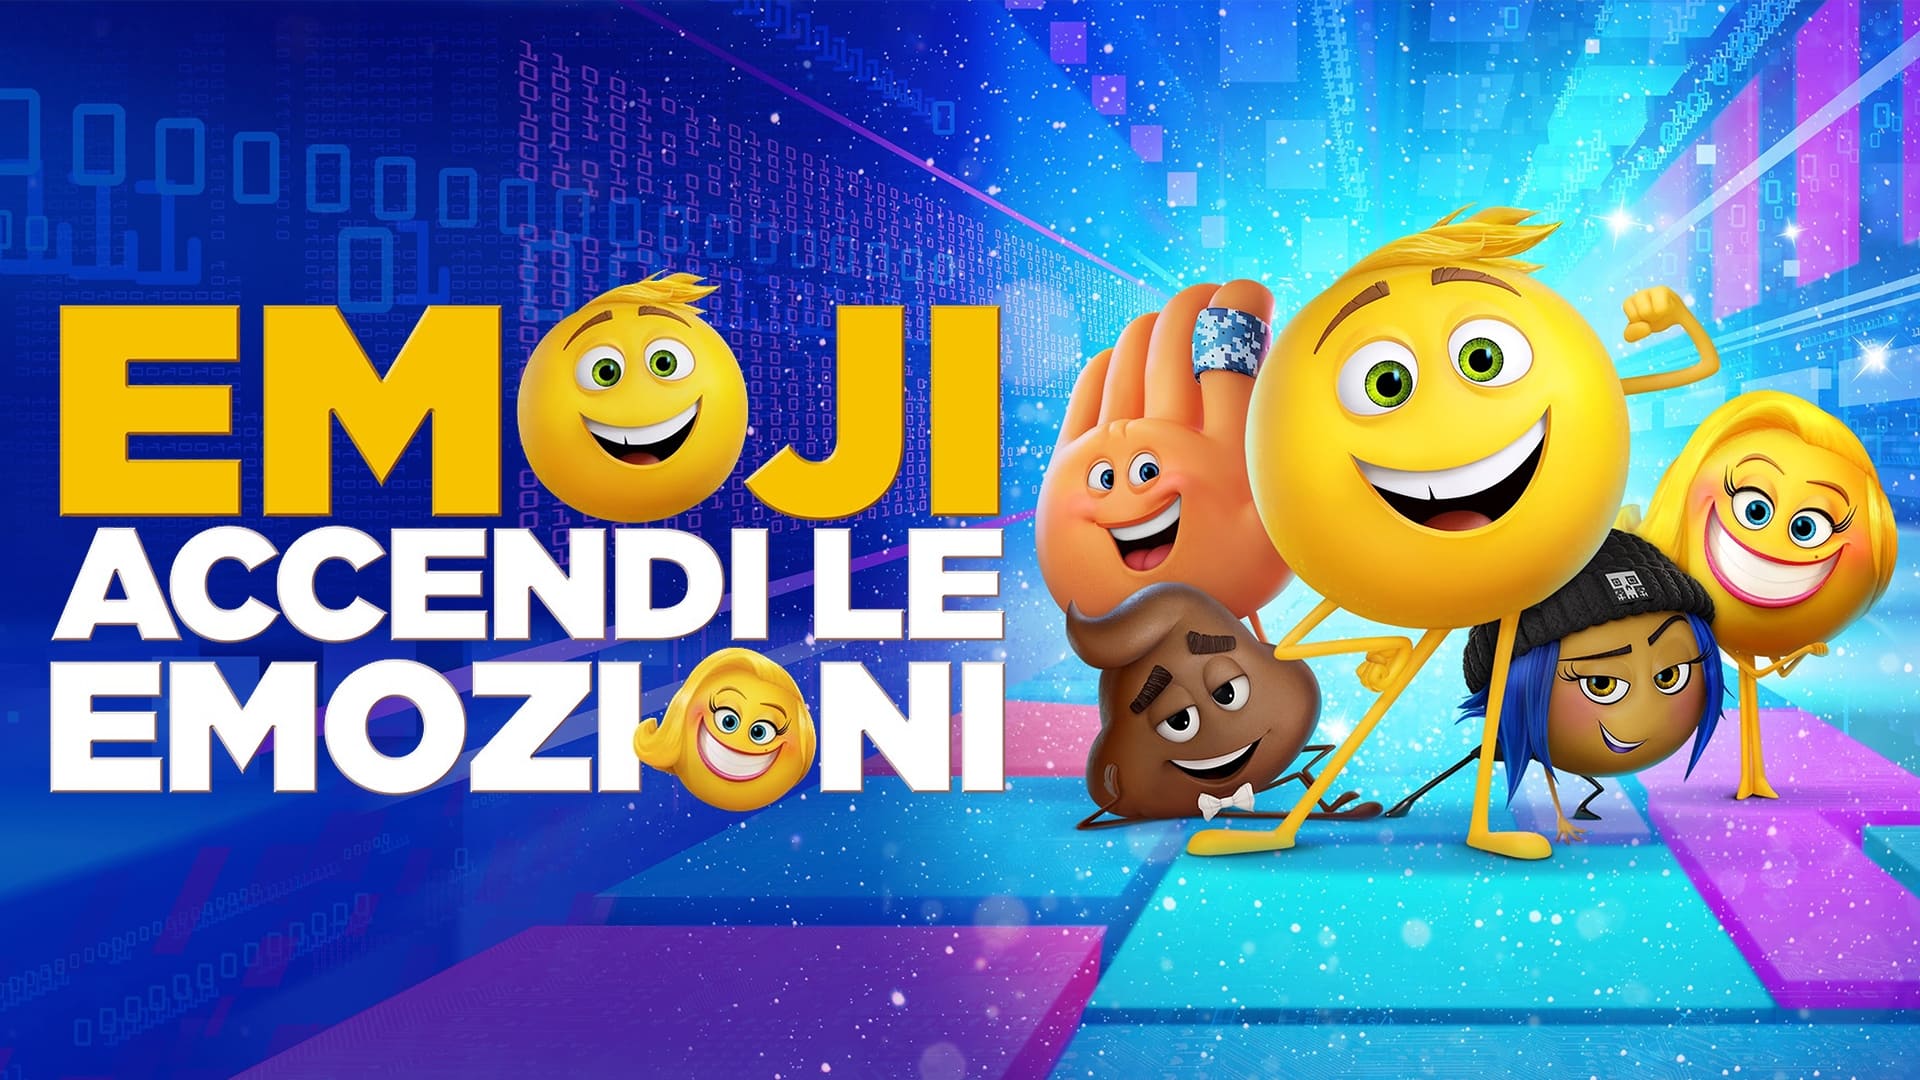 The Emoji Movie (2017) - Full Movie Free | Stream Free Movies & TV Shows